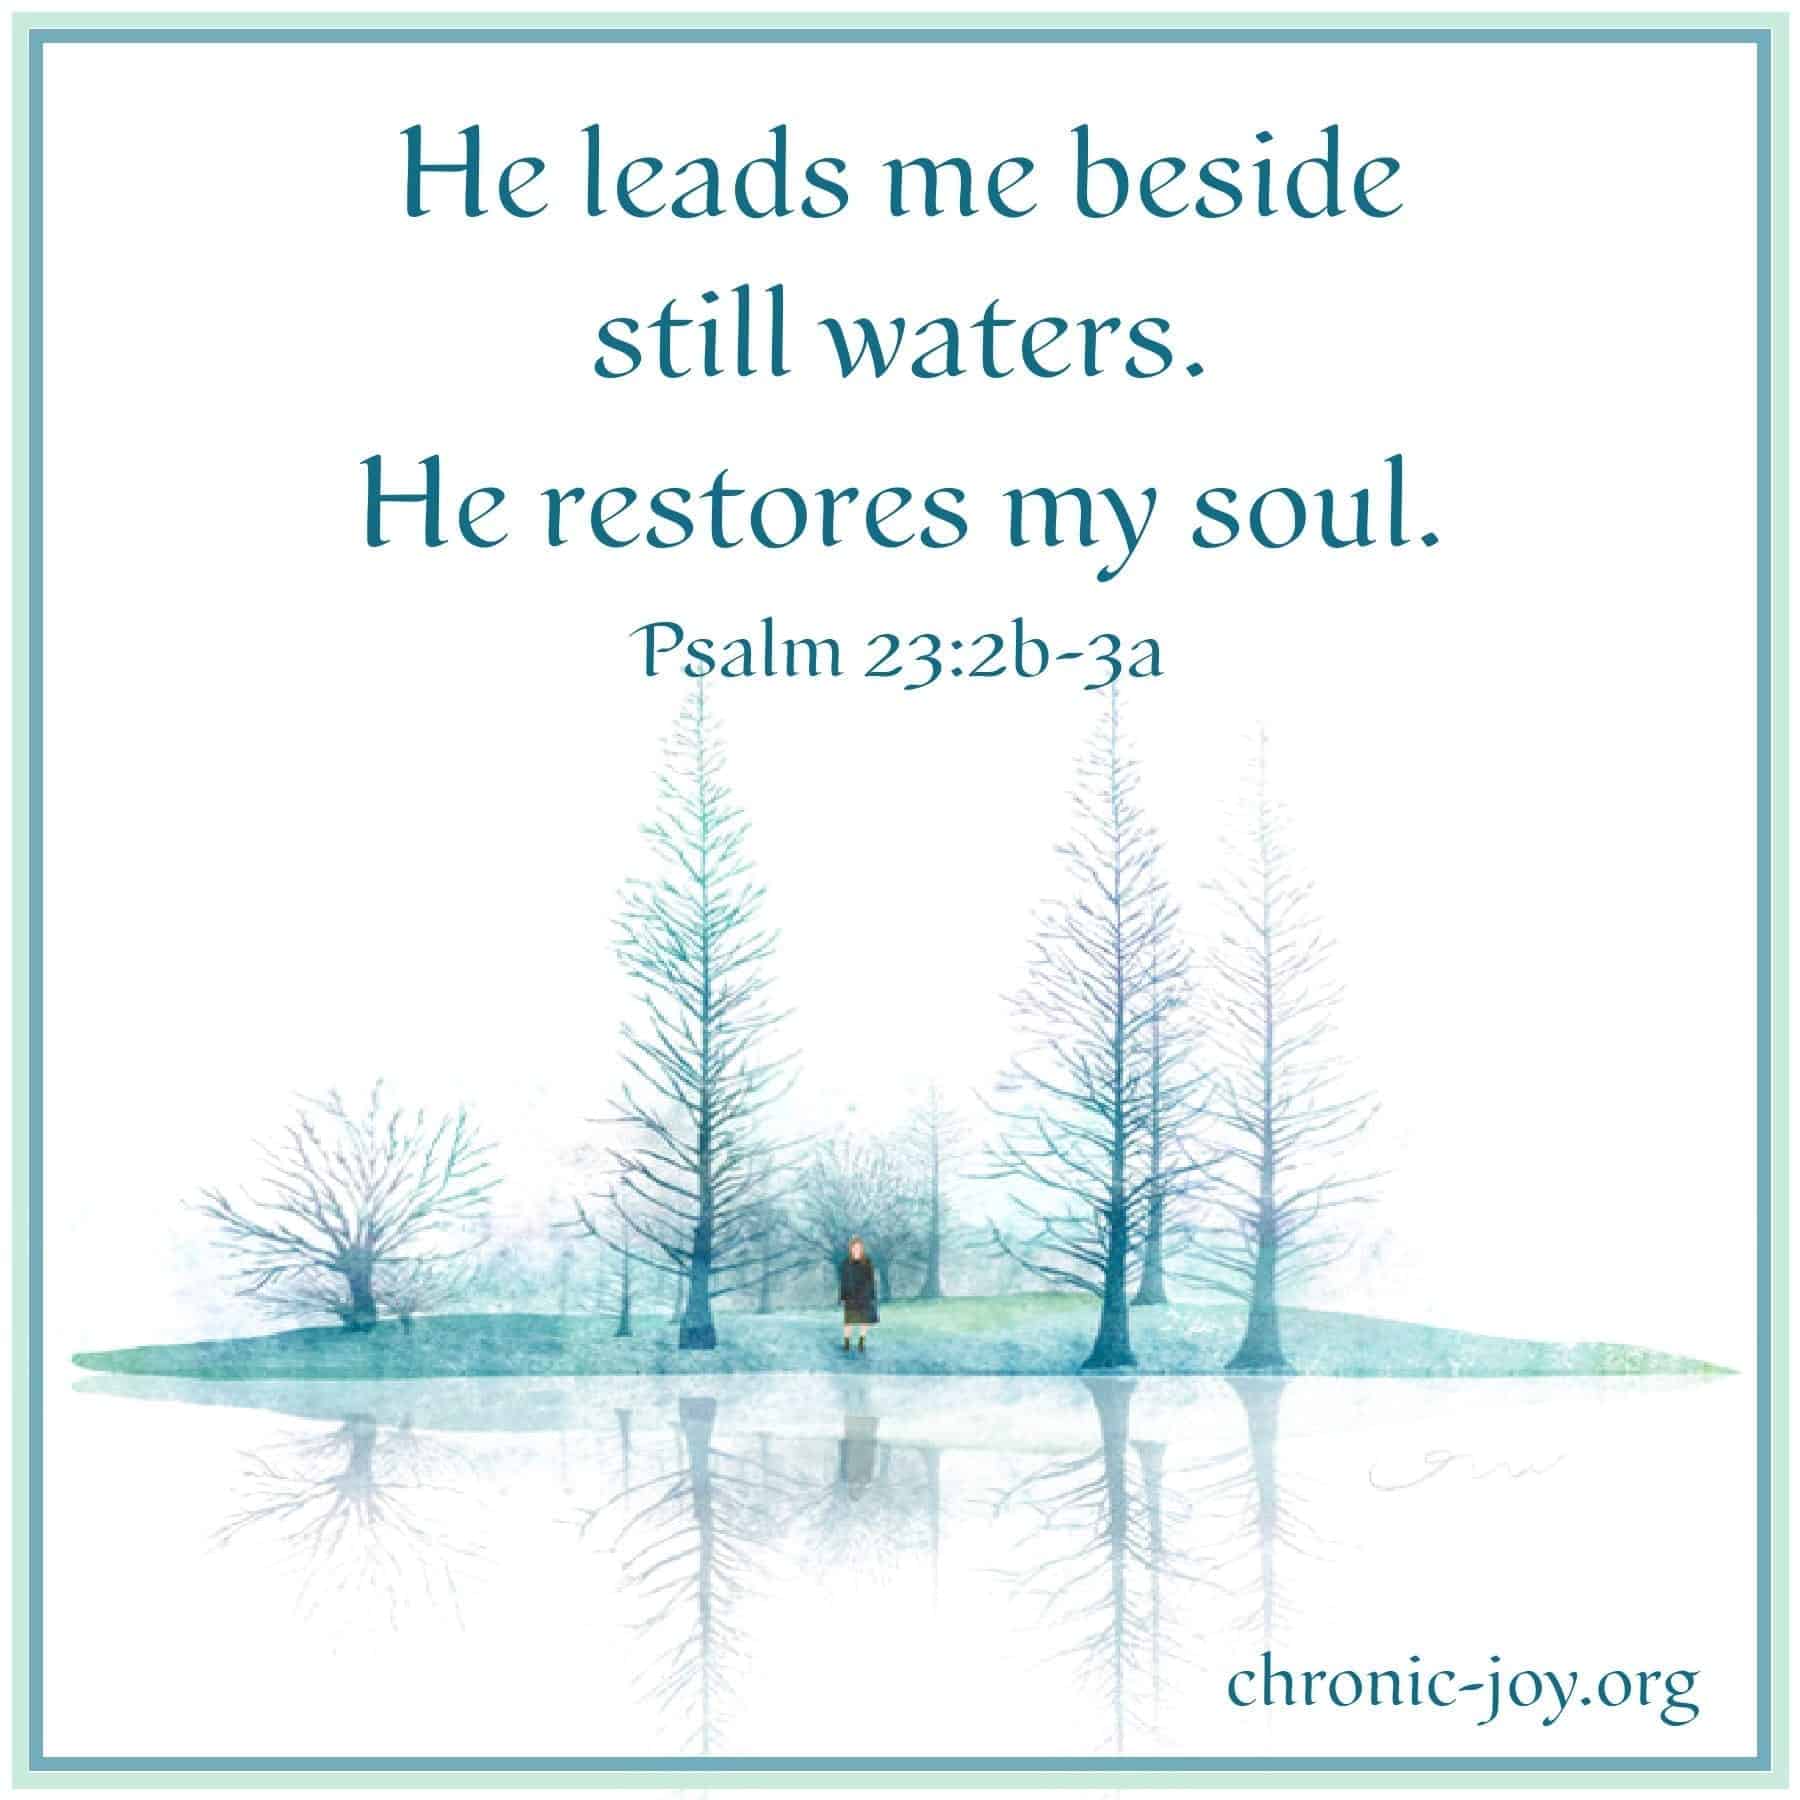 He leads me beside still waters. He restores my soul.